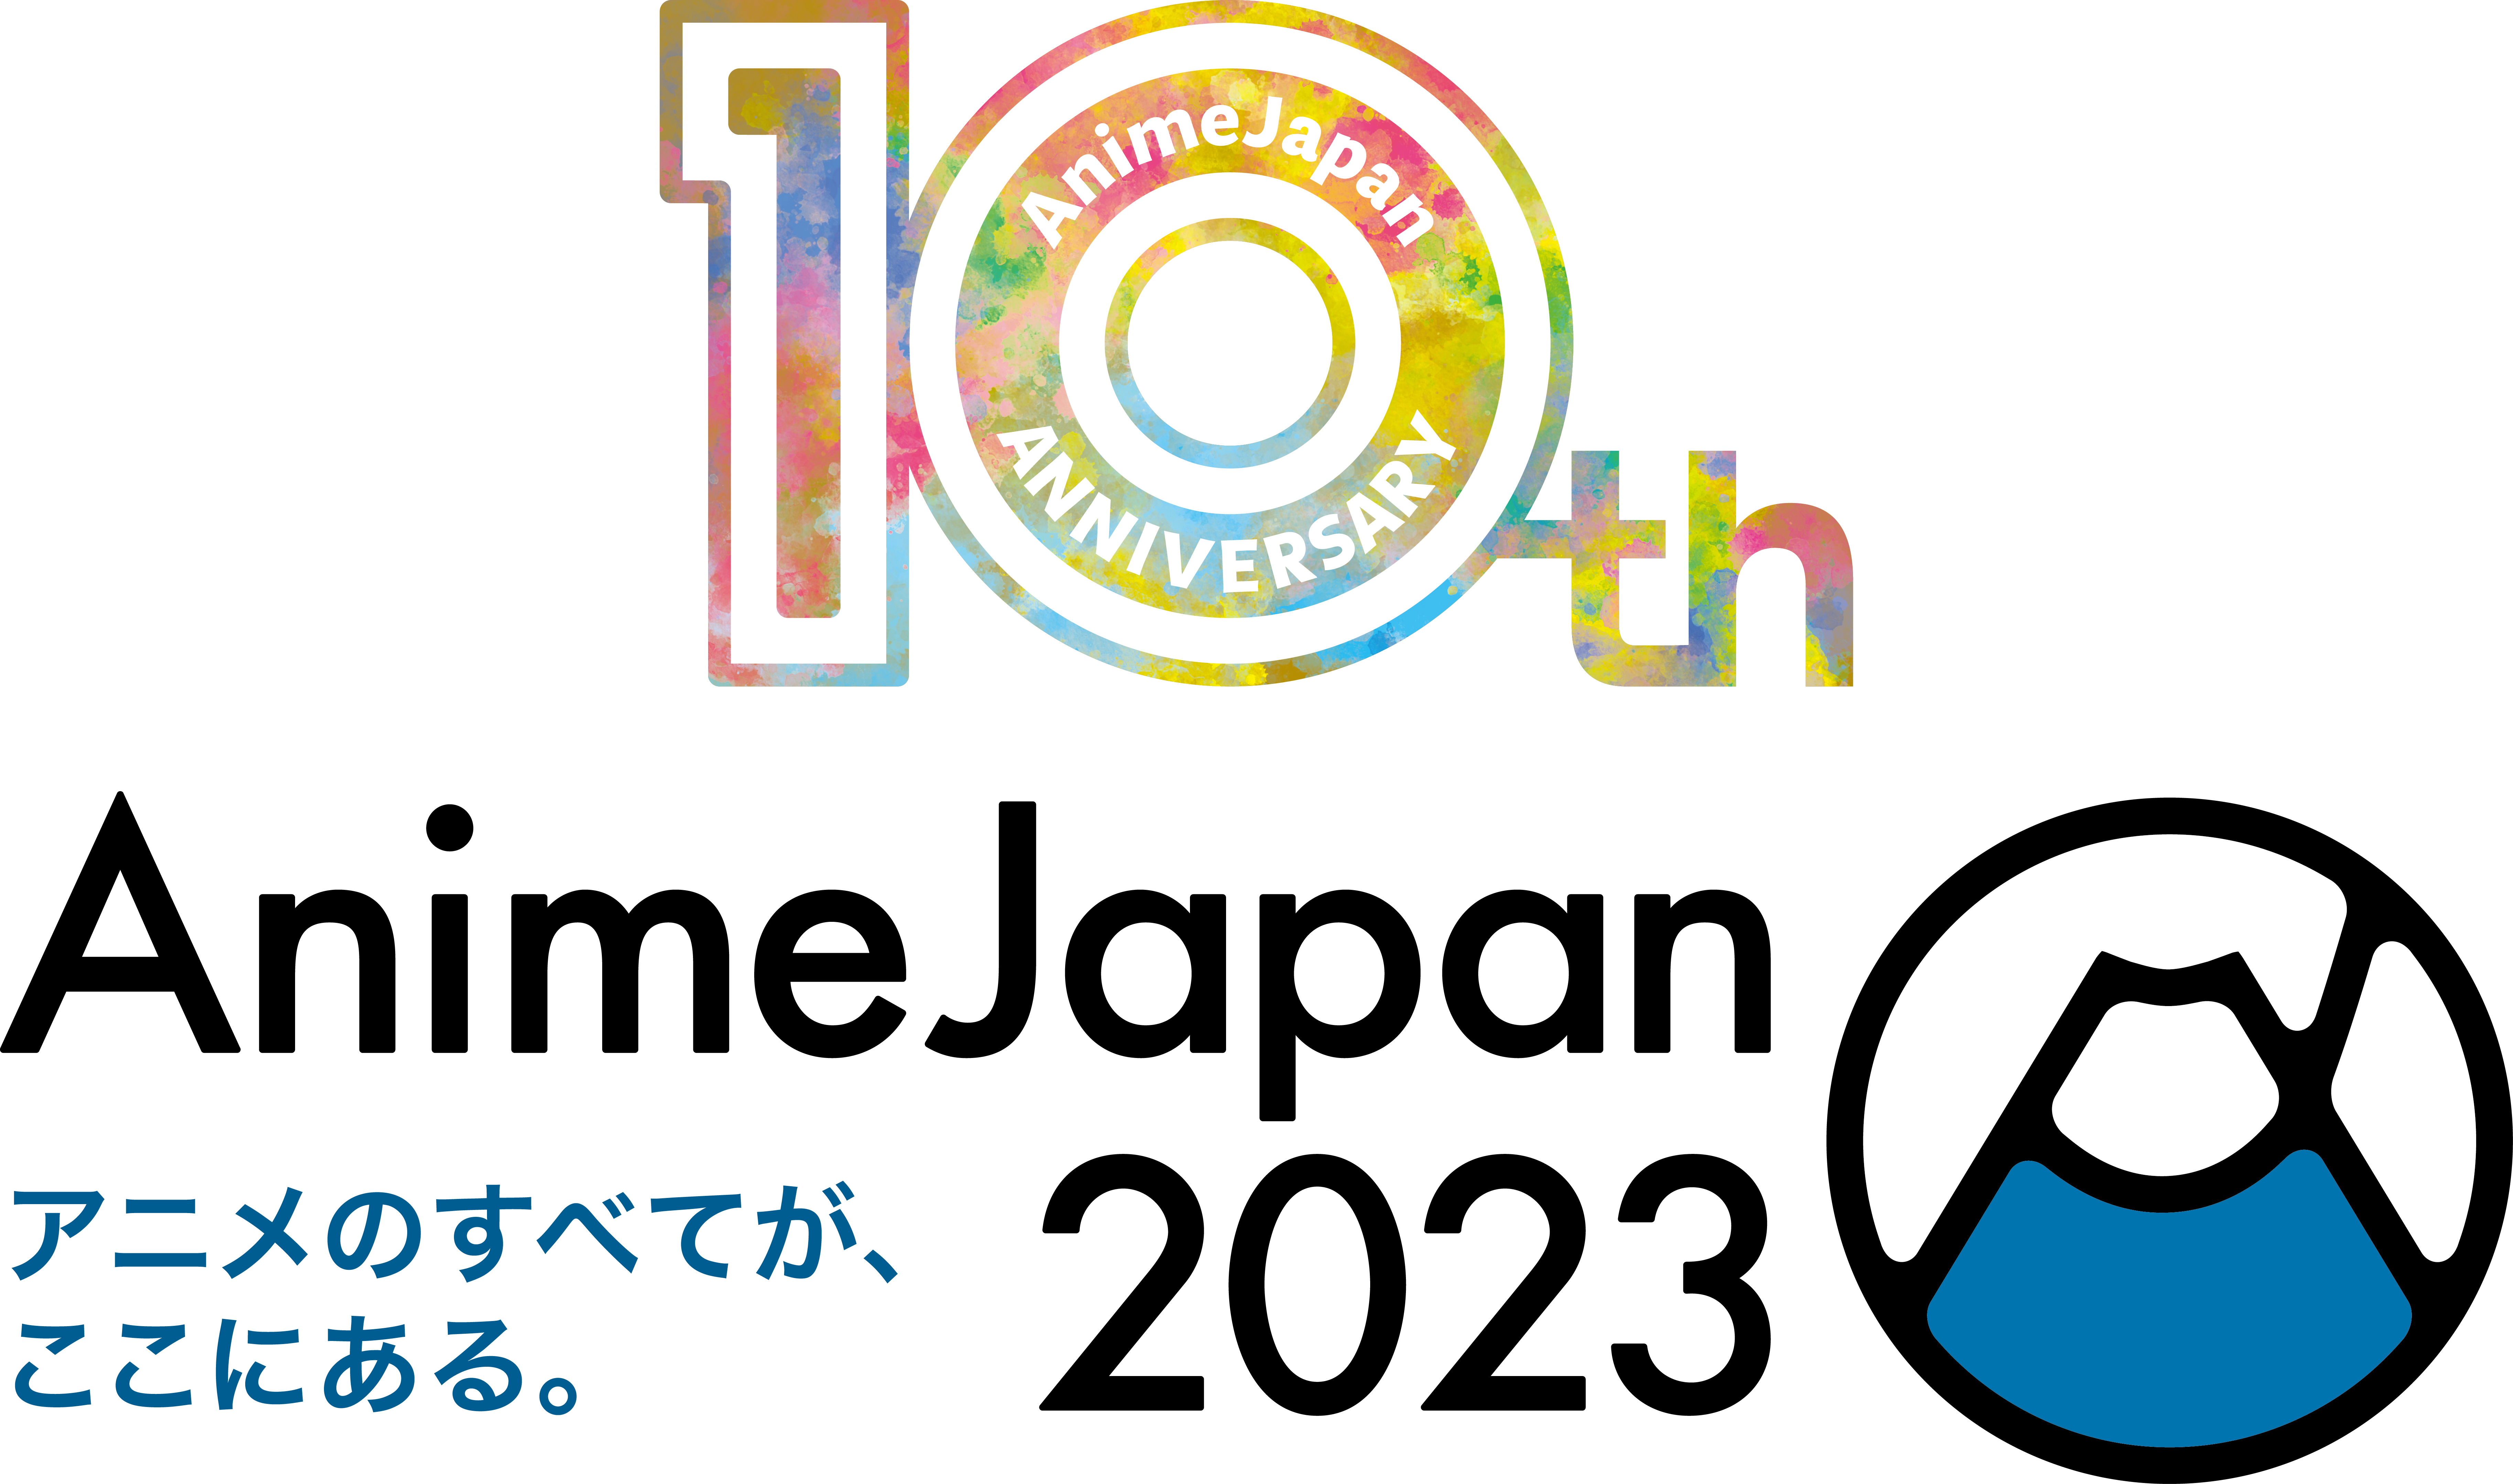 AnimeJapan 2023　10周年ロゴ